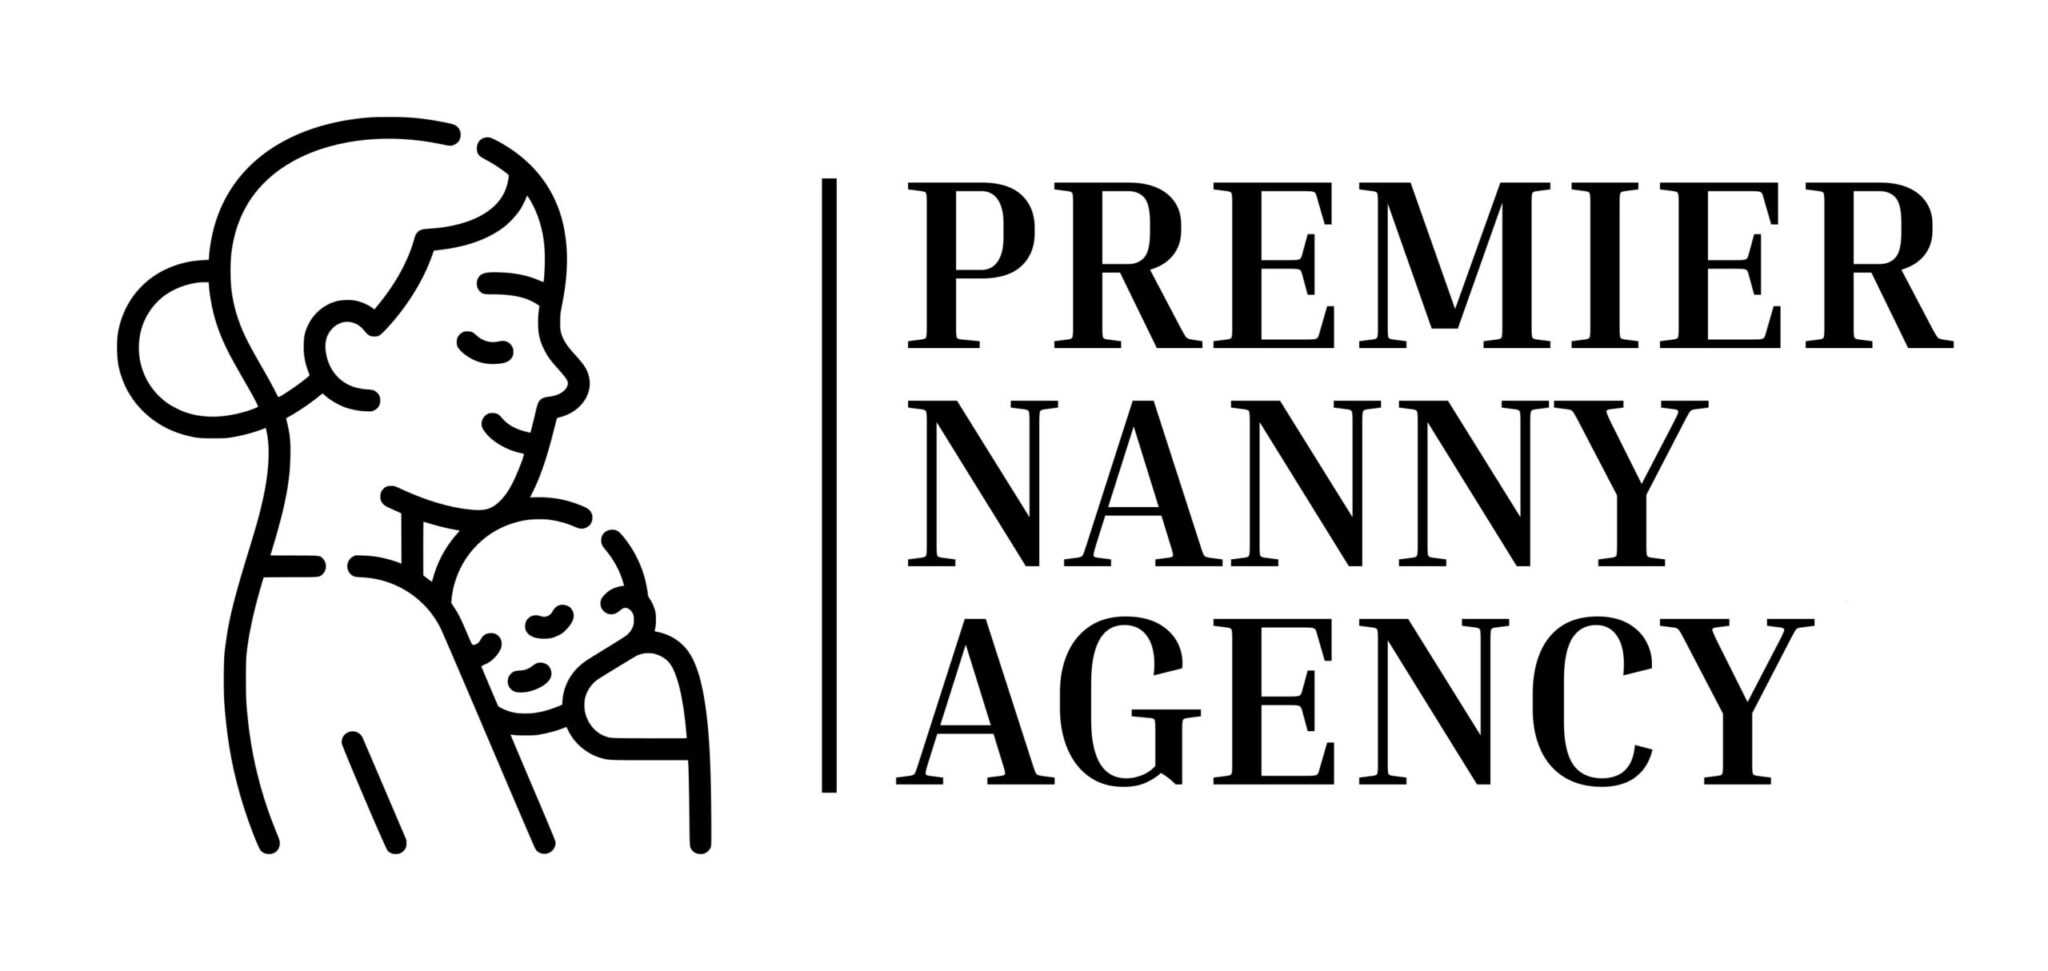 Premier Nanny Agency